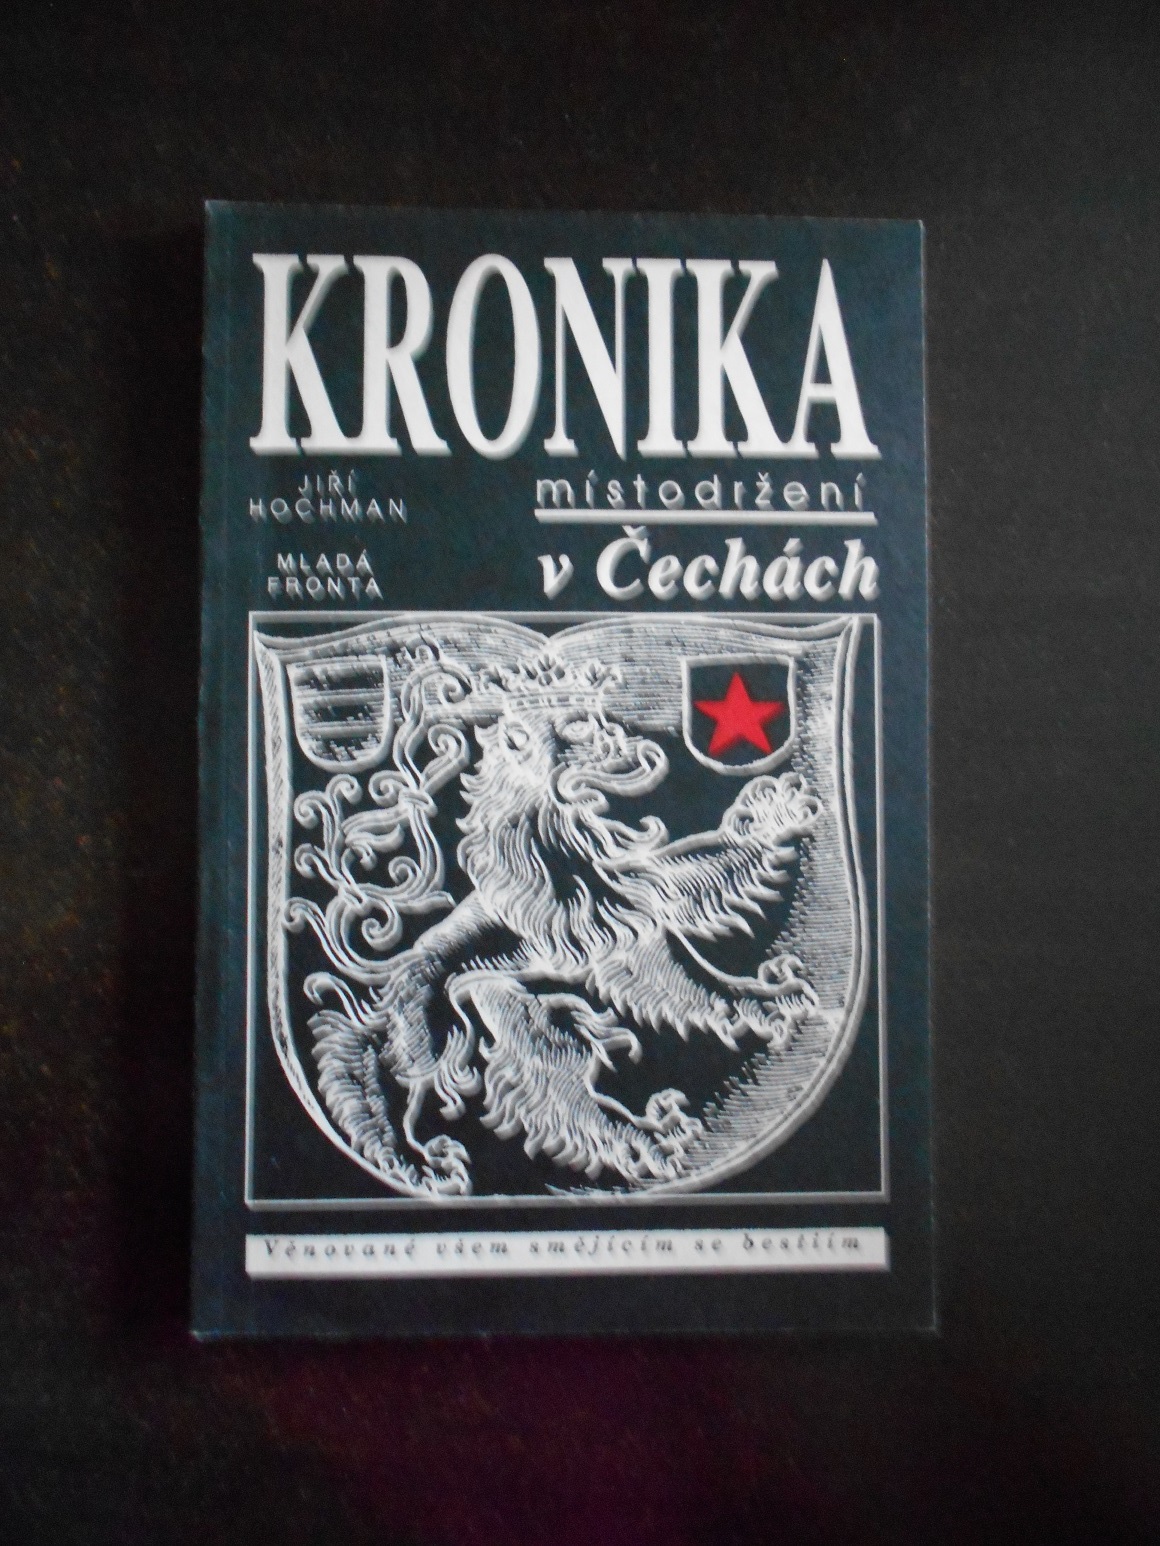 Kronika místodržení v Čechách